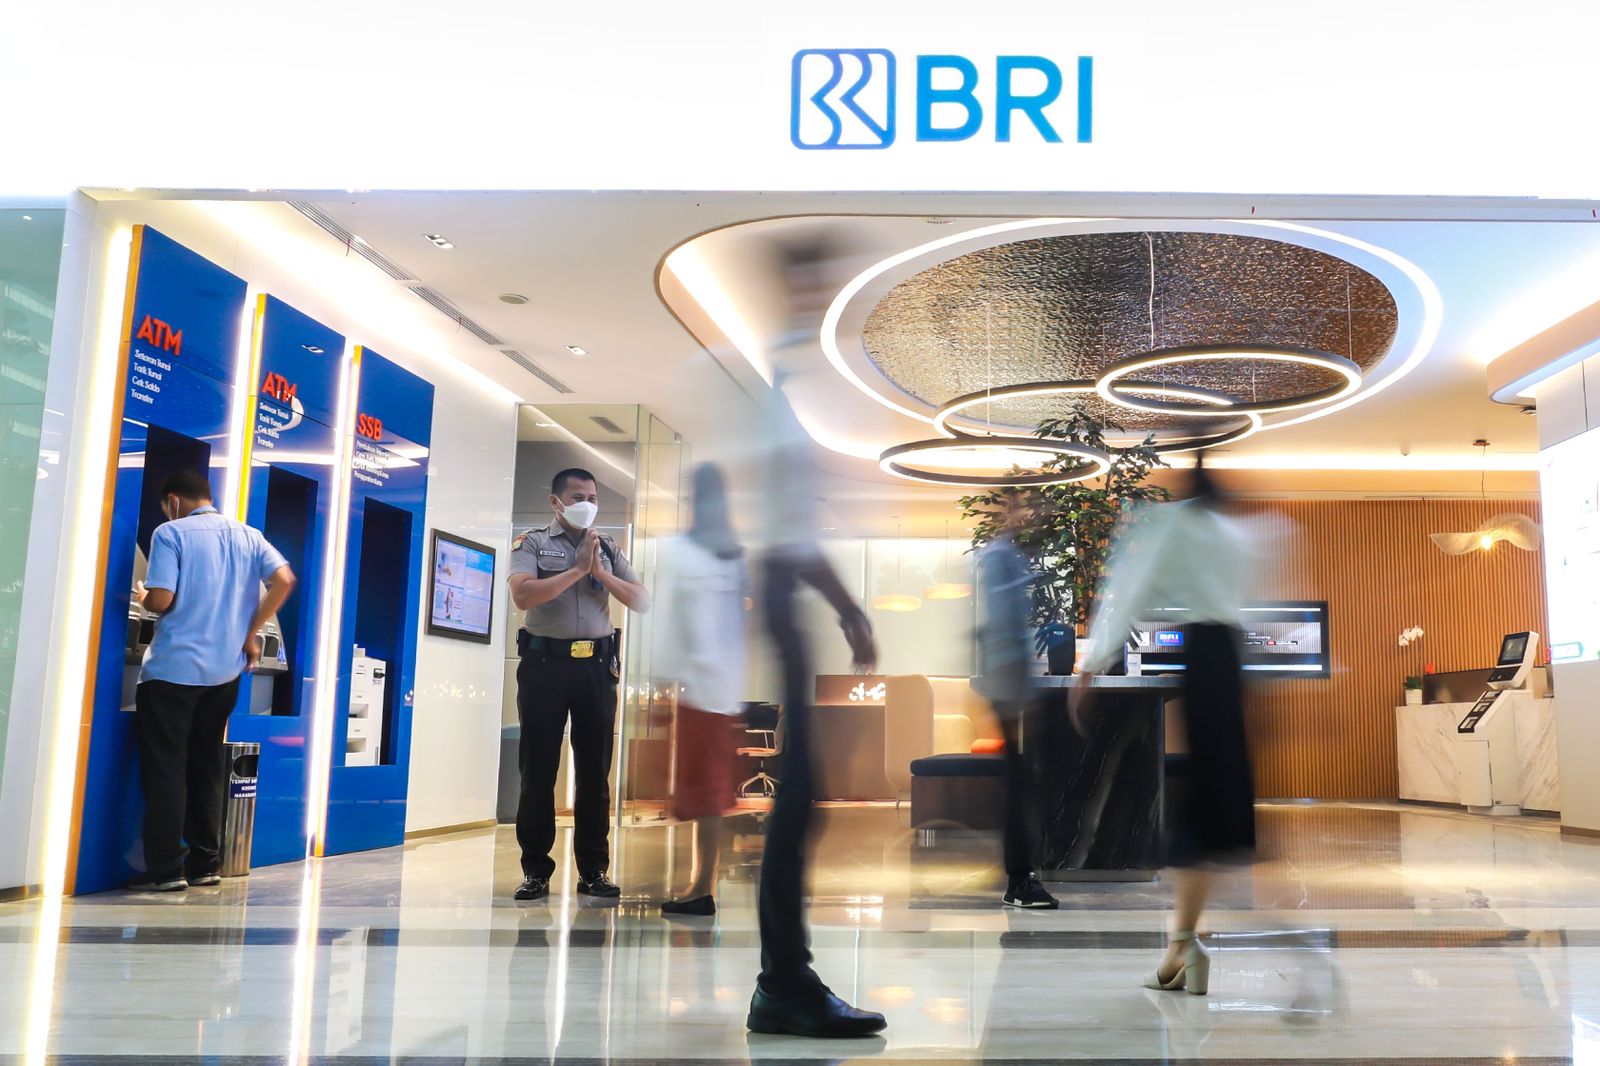 Jelang Libur Nataru, BRI Pastikan Kehandalan Digital Banking dan Layanan Terbatas di Kantor BRI